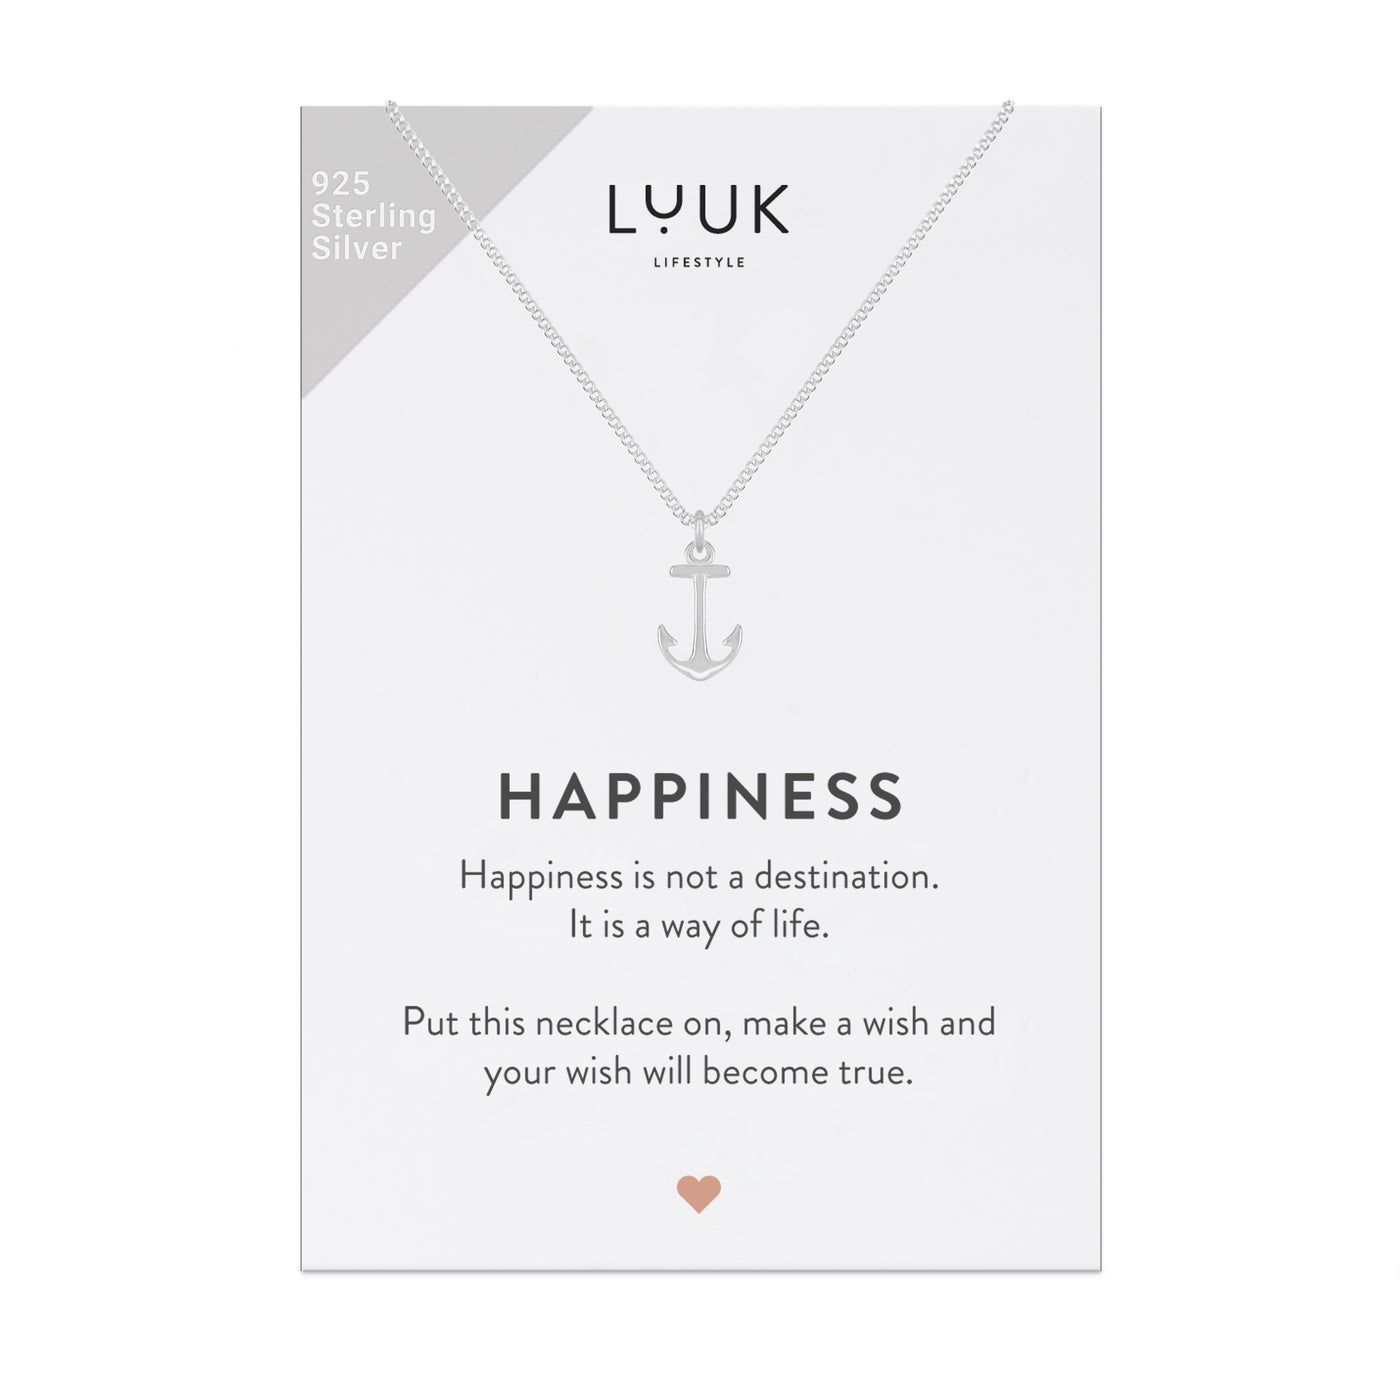 Silber Halskette mit Anker Anhänger aus 925 Sterling Silber auf Happiness Spruchkarte von Luuk Lifestyle 